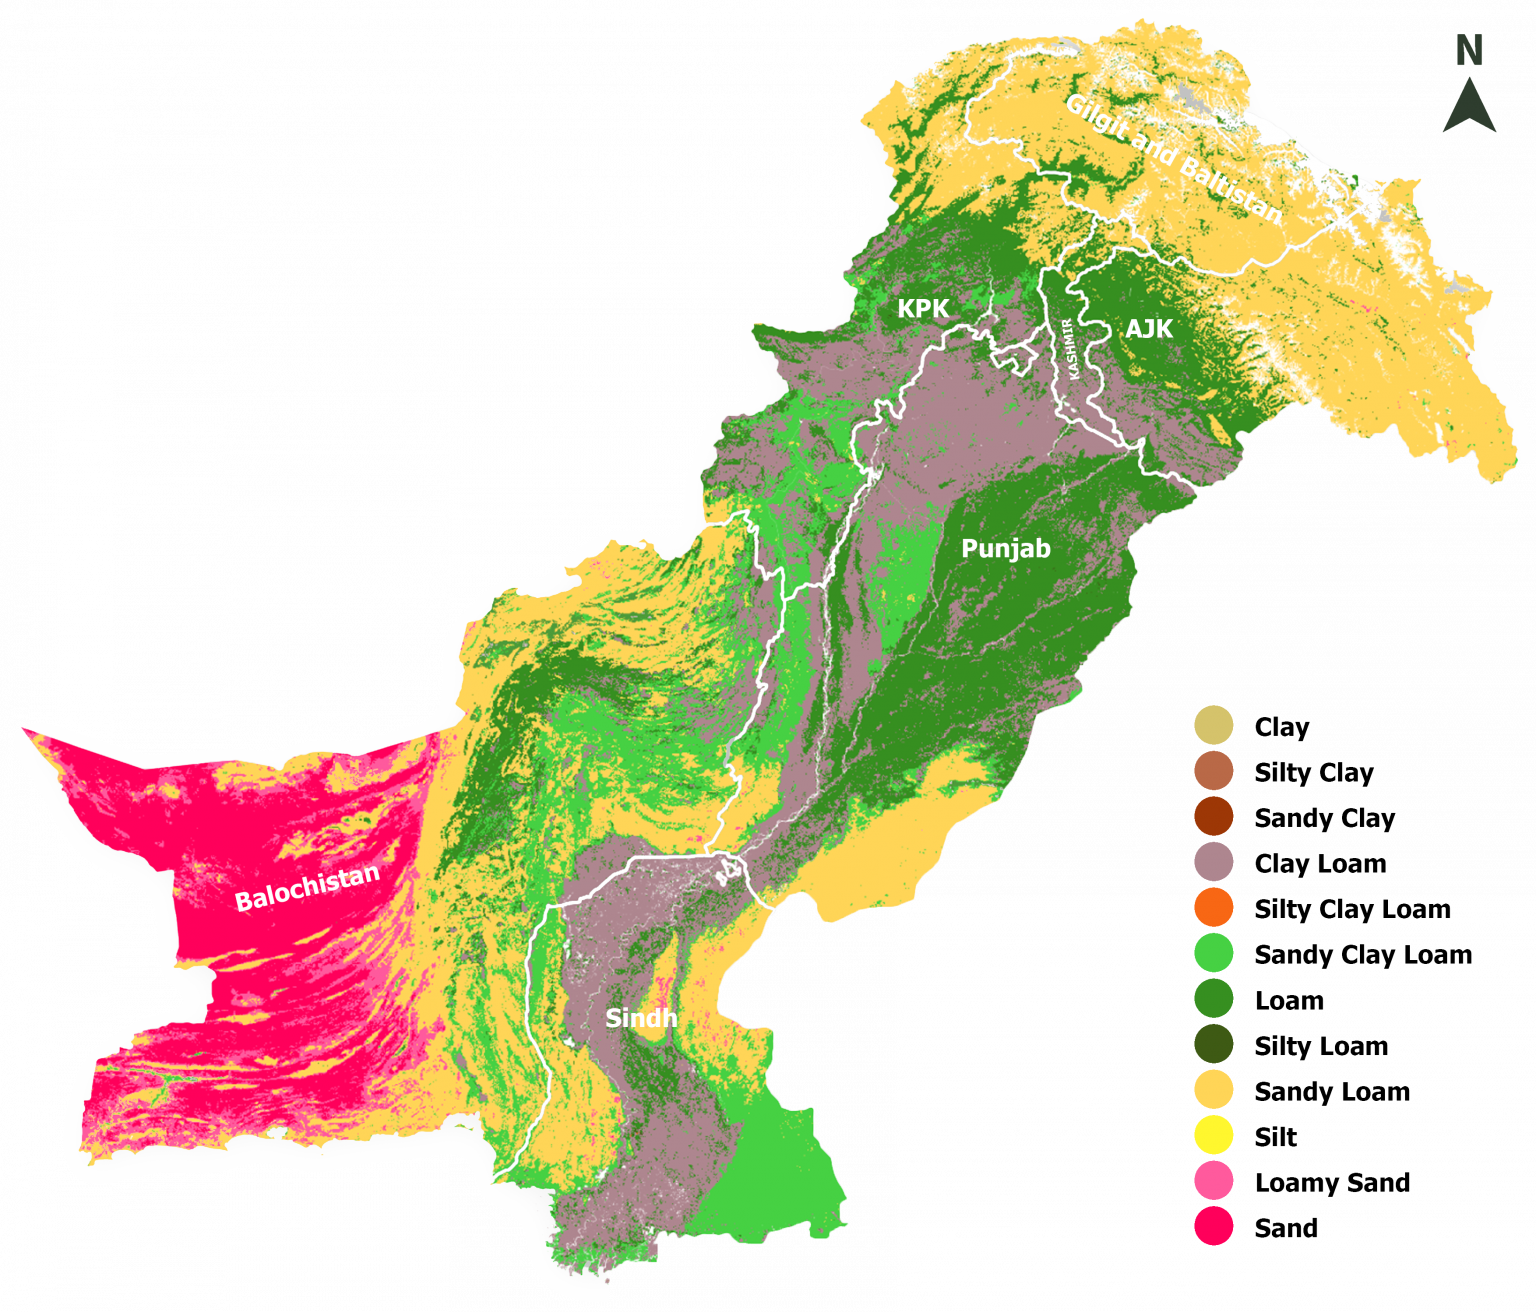 Soil Texture in Pakistan